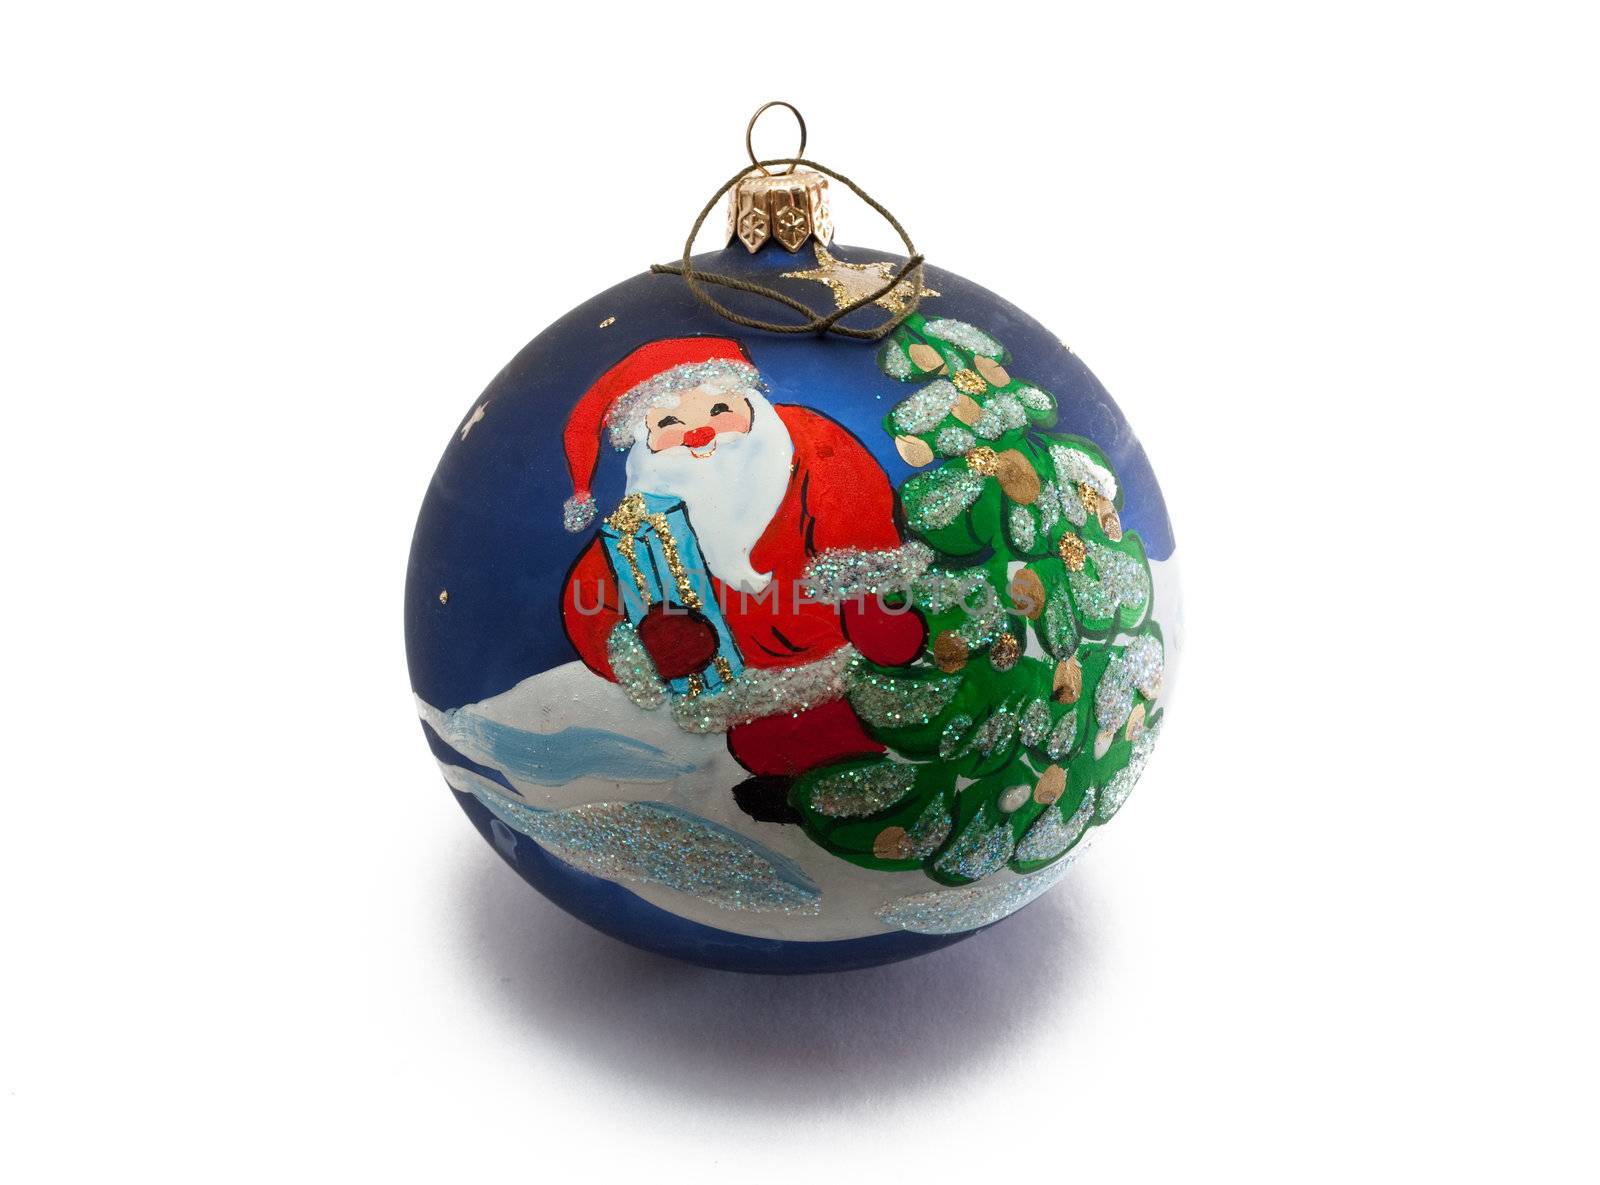 Christmas ornament by AGorohov